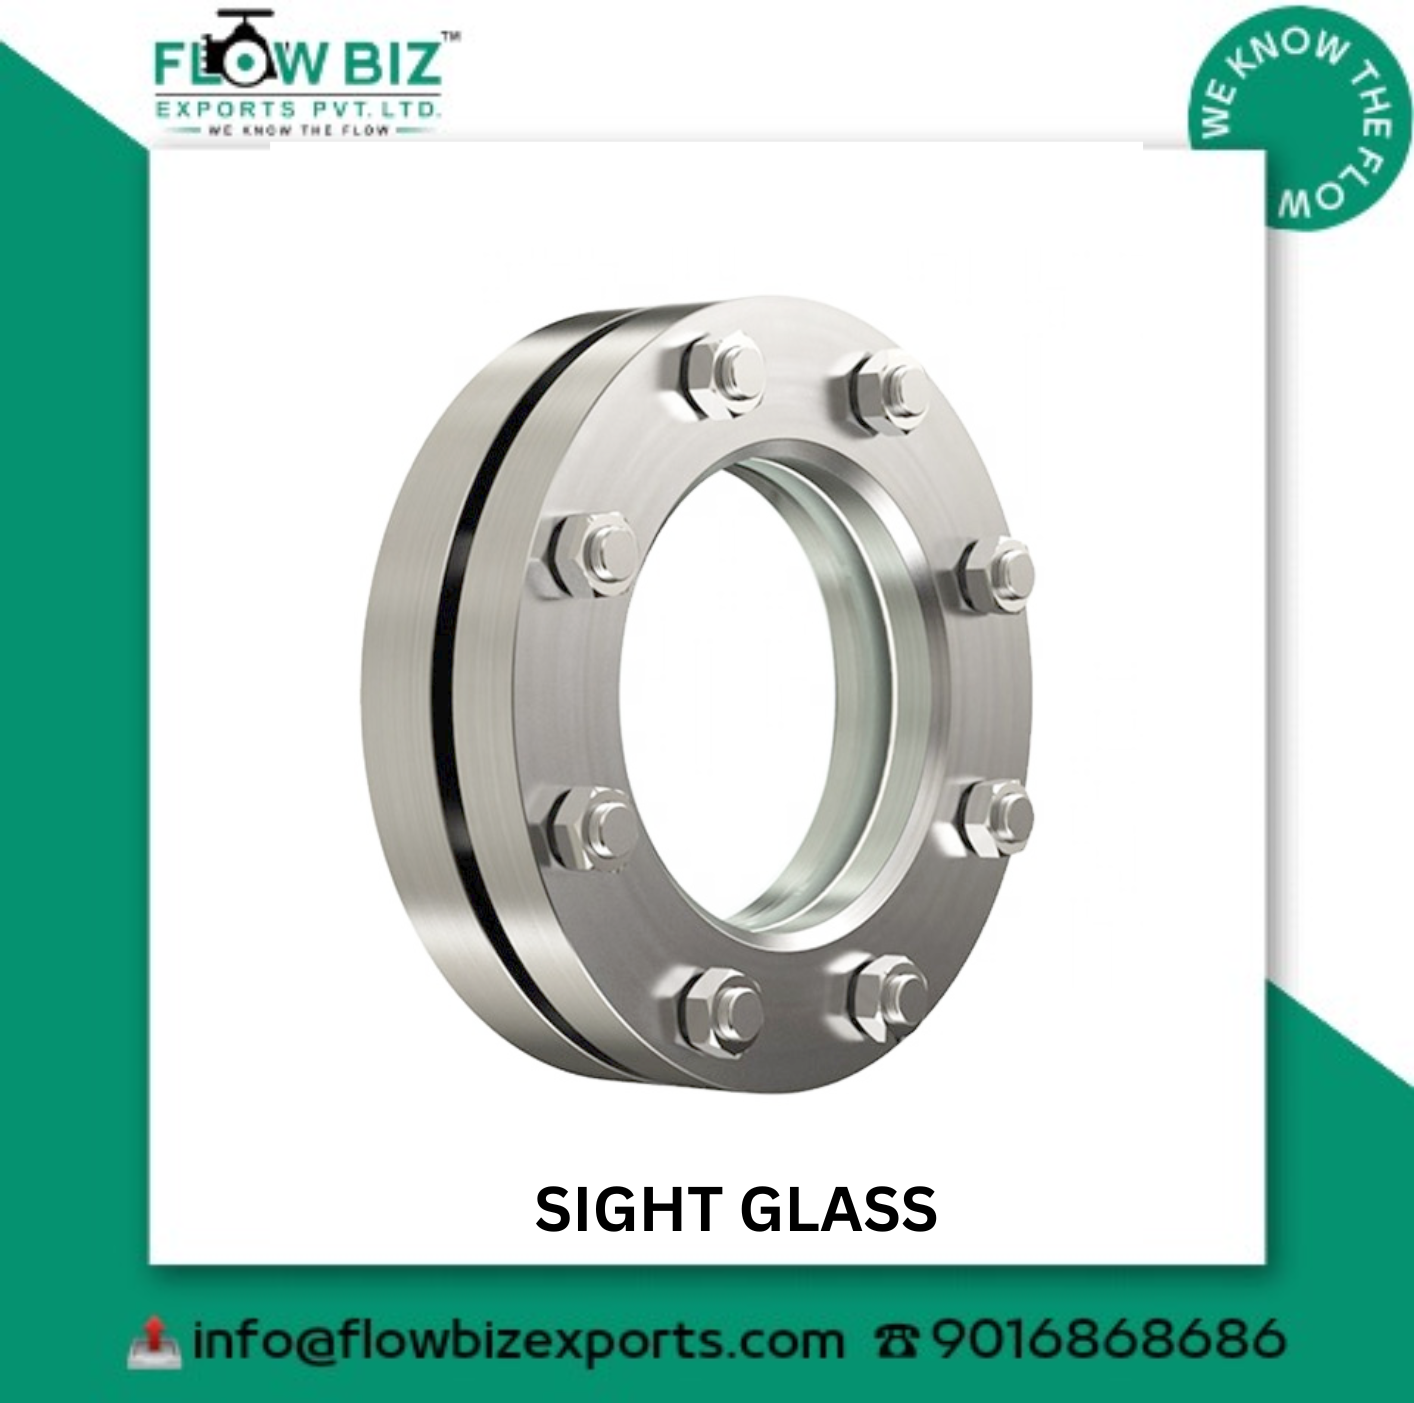 best sight glass manufacturer mumbai - Flowbiz